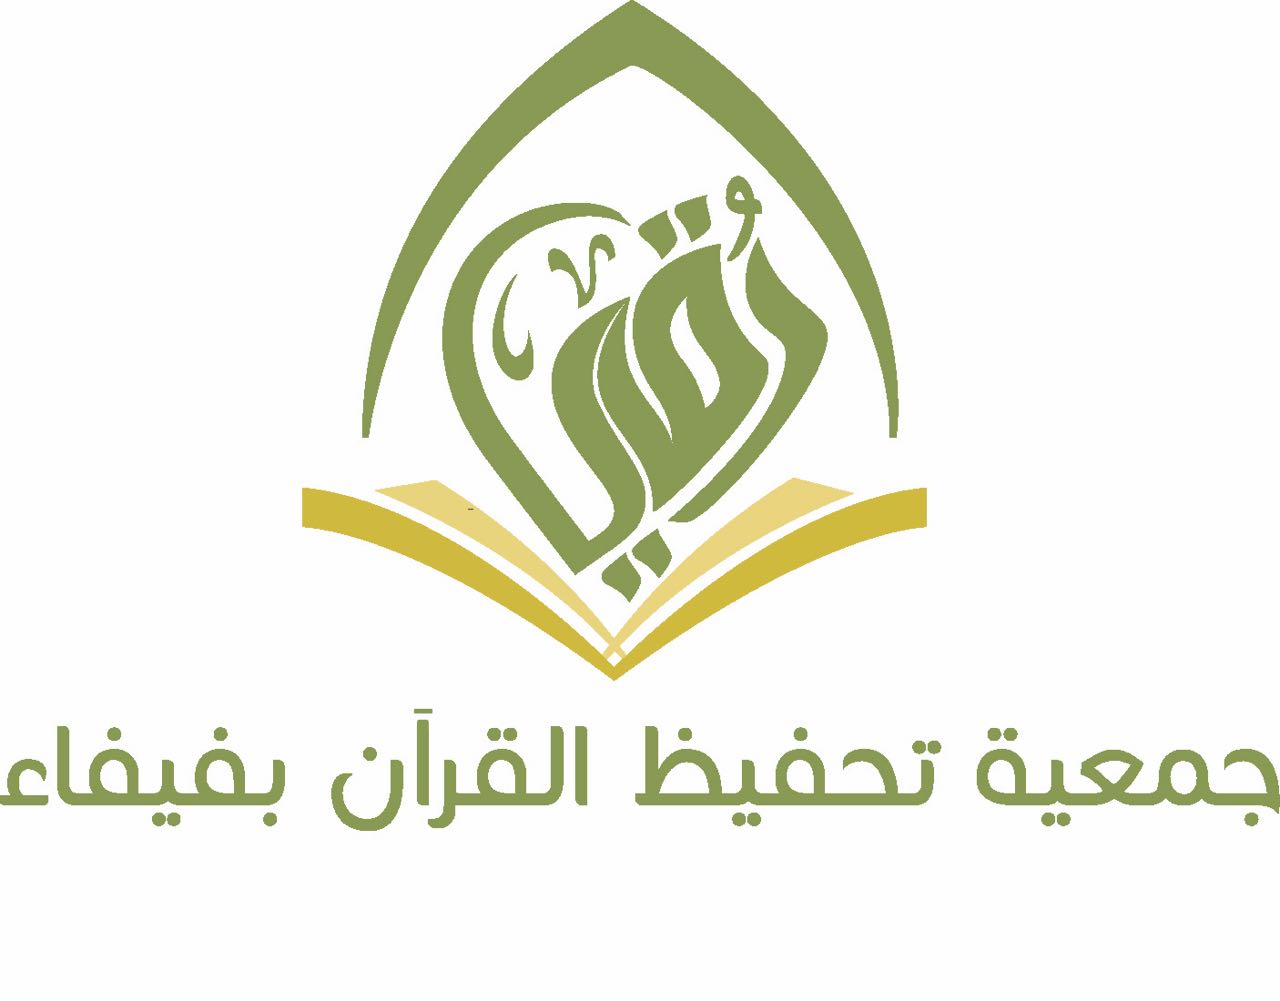 جمعية رقي بفيفاء تعلن عن باب الترشيح للجمعية العمومية